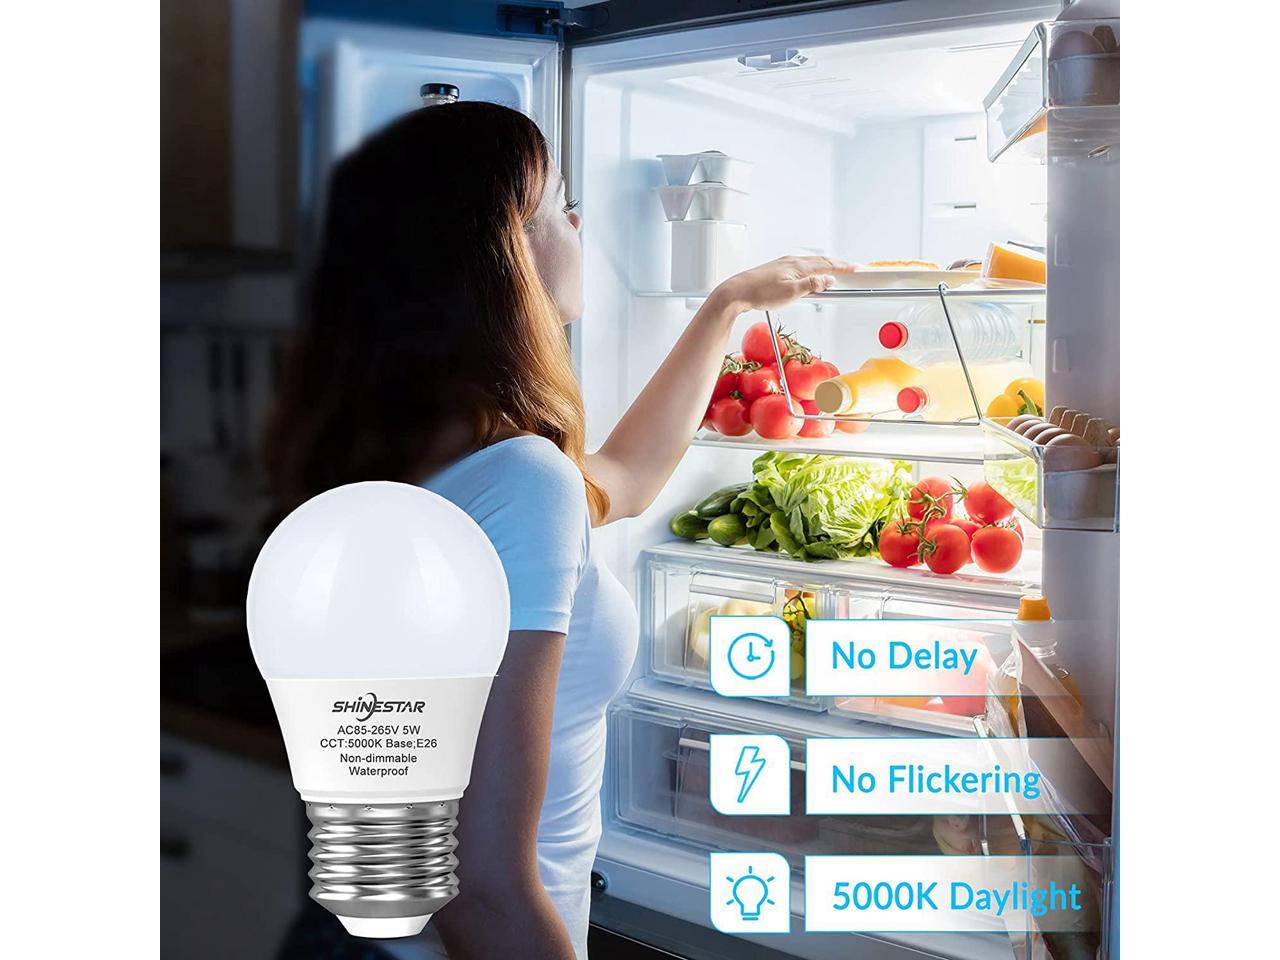 Freezer E26 Base A15 LED Appliance Light Bulb for Fridge SHINESTAR 2-Pack LED Refrigerator Bulbs 40W 120V Non-dimmable Daylight 5000K Waterproof 